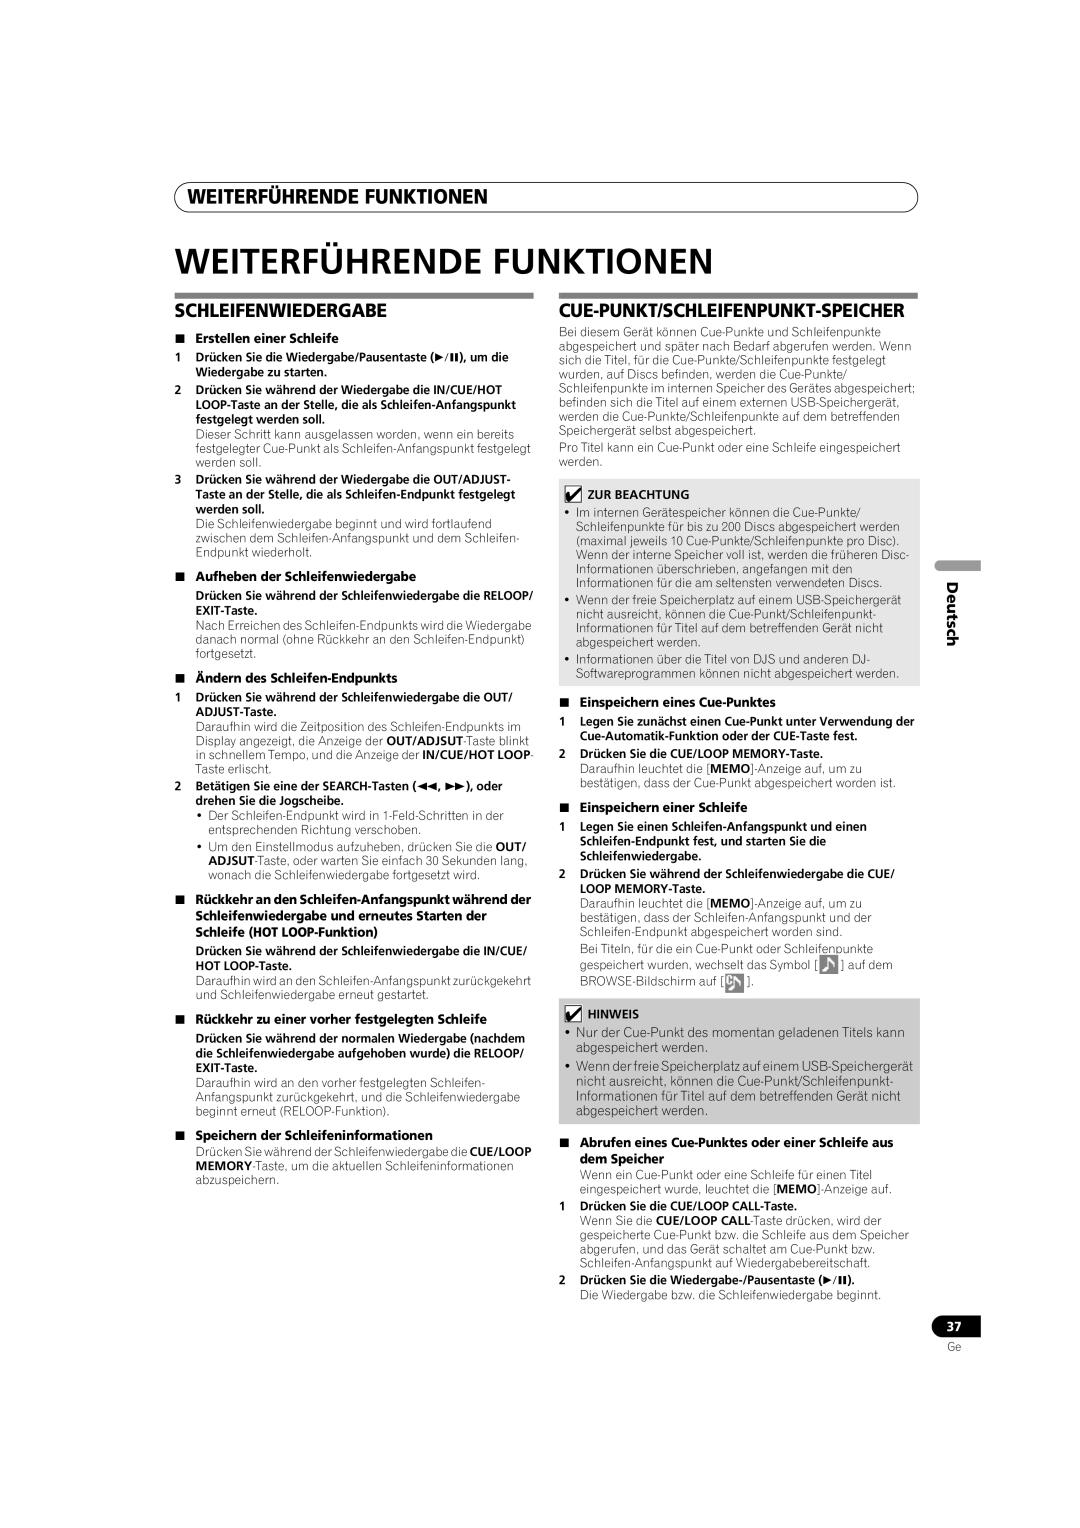 Pioneer MEP-7000 Weiterführende Funktionen, Schleifenwiedergabe, Cue-Punkt/Schleifenpunkt-Speicher, Deutsch 